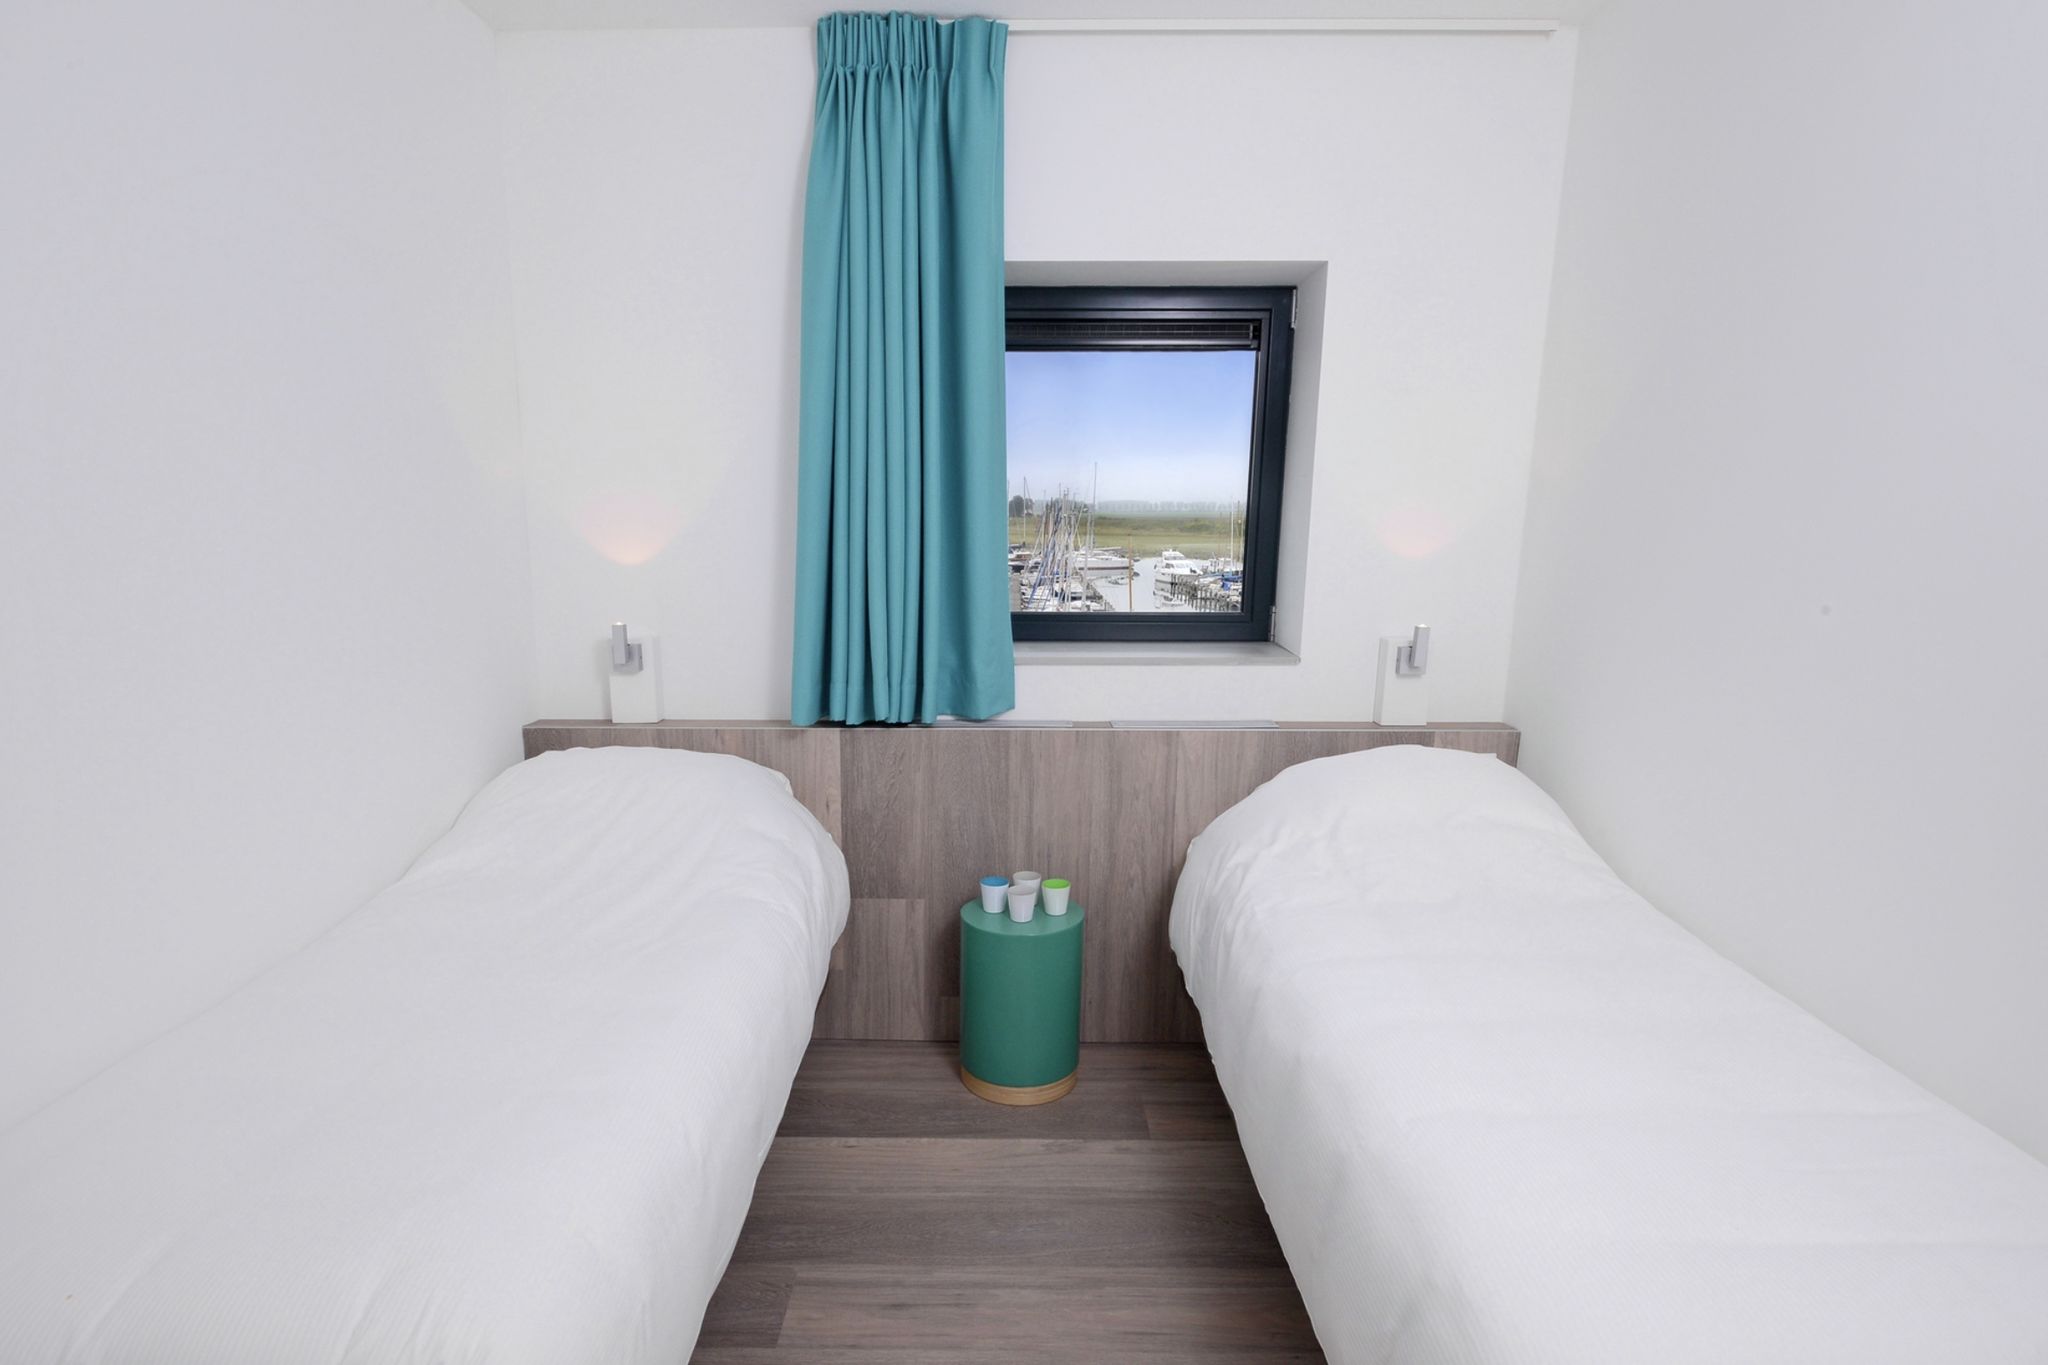 Luxe appartement in Kamperland met uitzicht op het water